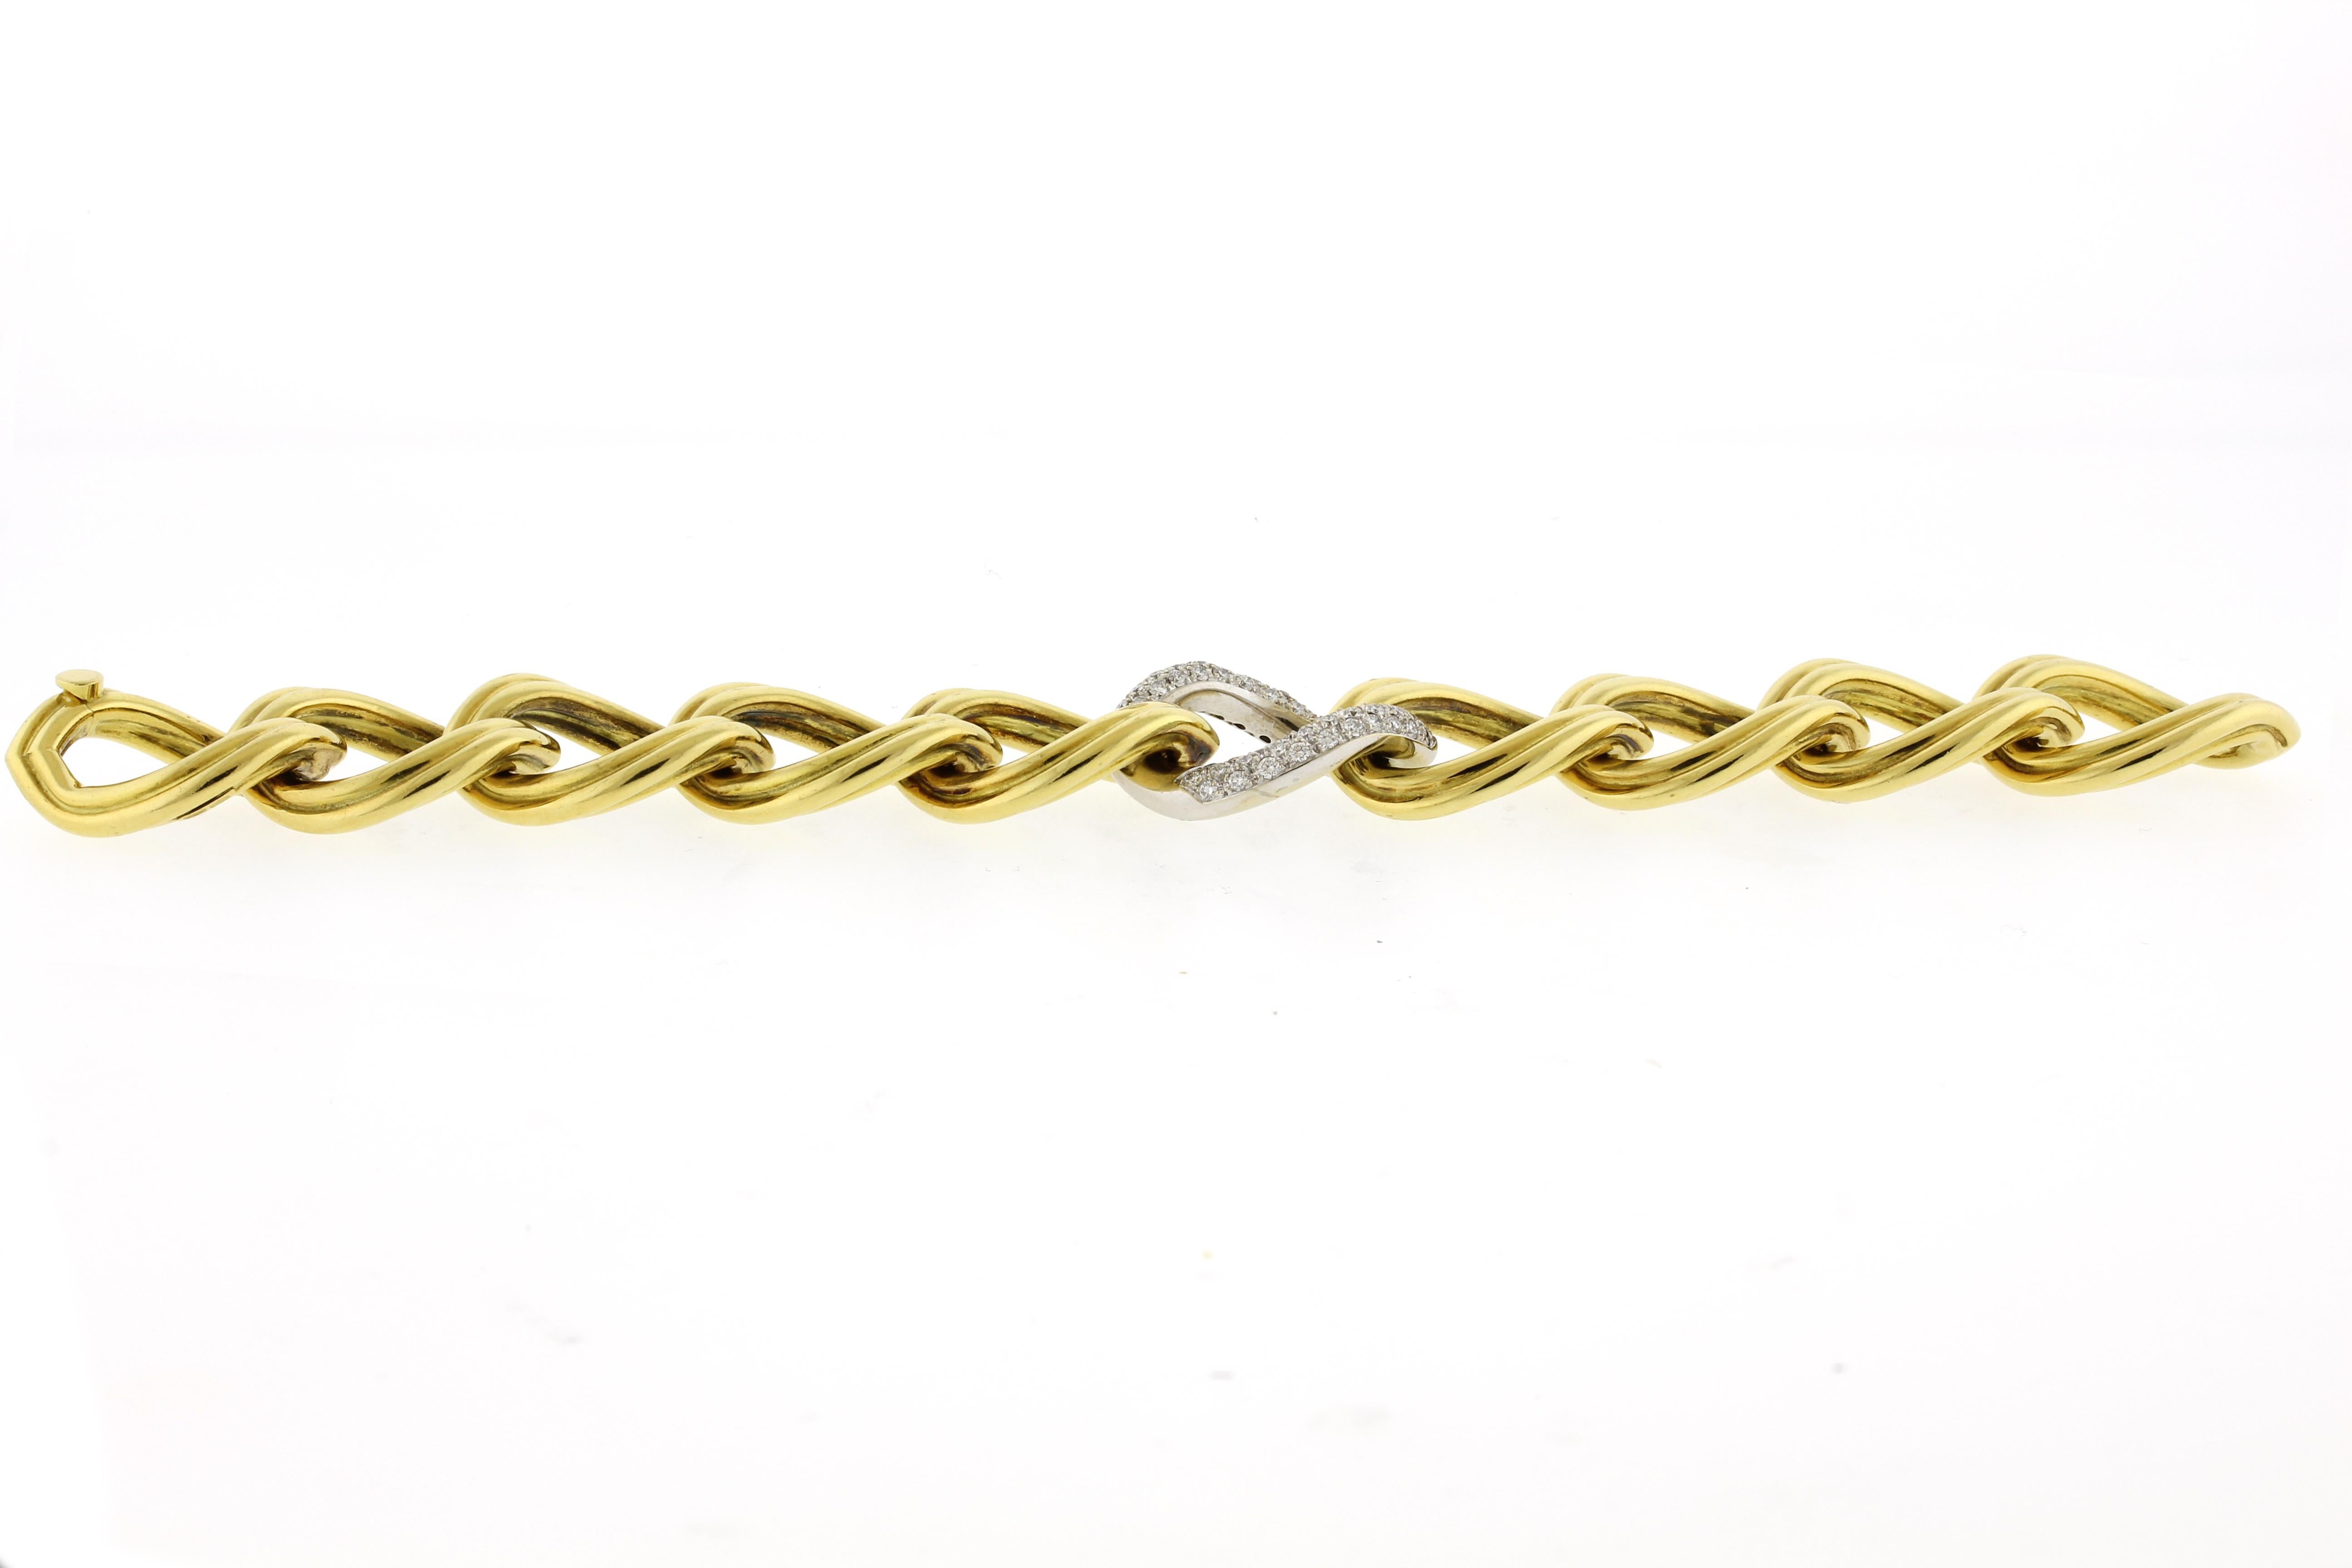 Ce bracelet en or jaune et blanc 18 carats présente de larges maillons ovales cannelés et un centre orné de diamants pavés.  Les diamants sont de couleur G et de pureté VS.
Métal : 18 Karat
Longueur : 8 pouces
♦ Largeur : 3/4 de pouce
Diamants :